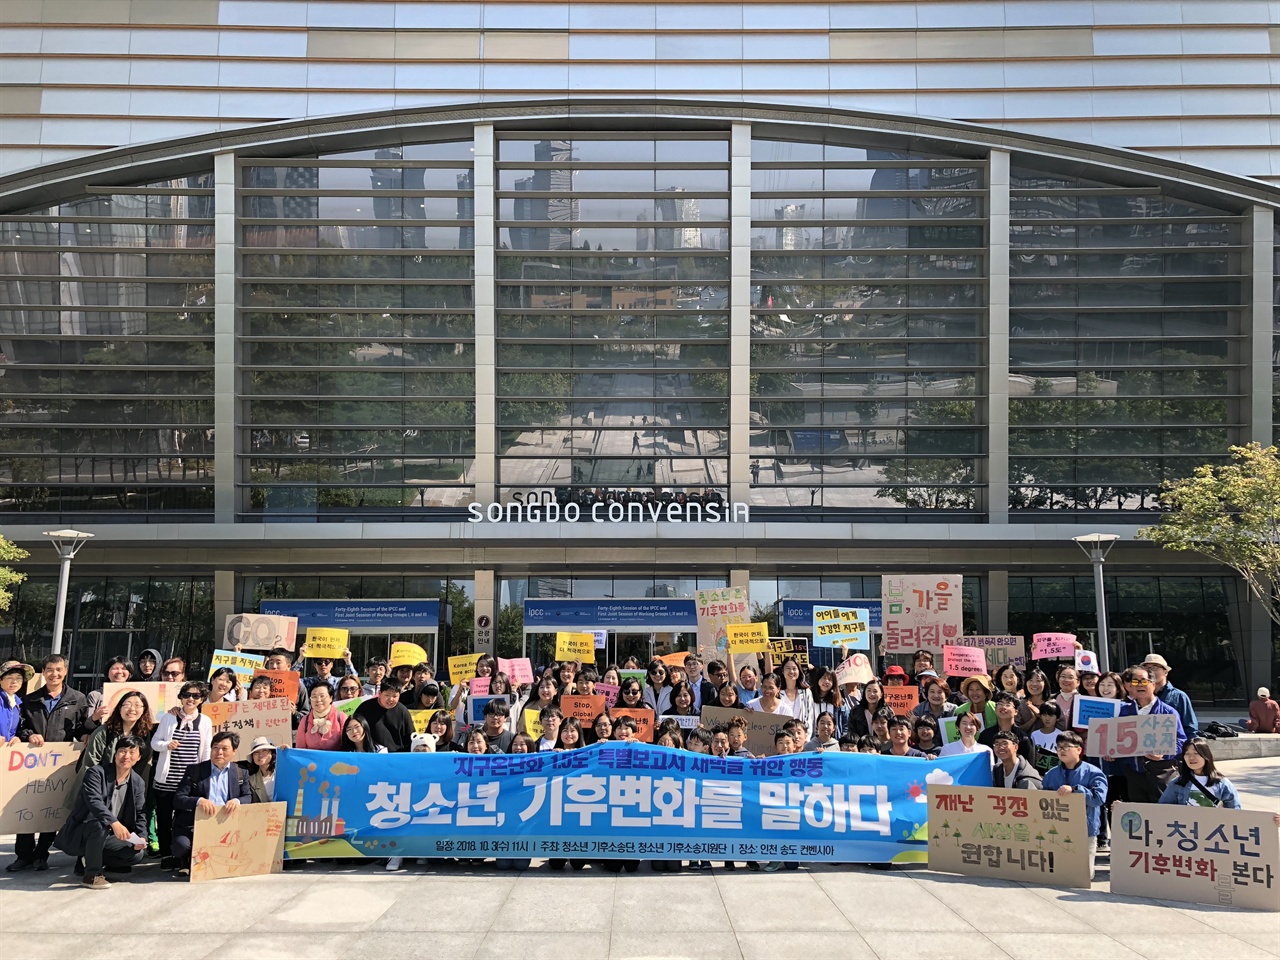 3일 오전 11시, 청소년기후소송단은 IPCC 회의가 열리는 인천 송도 컨벤시아에 모여 지구온난화 제한 1.5℃ 특별보고서 채택을 요구했다.